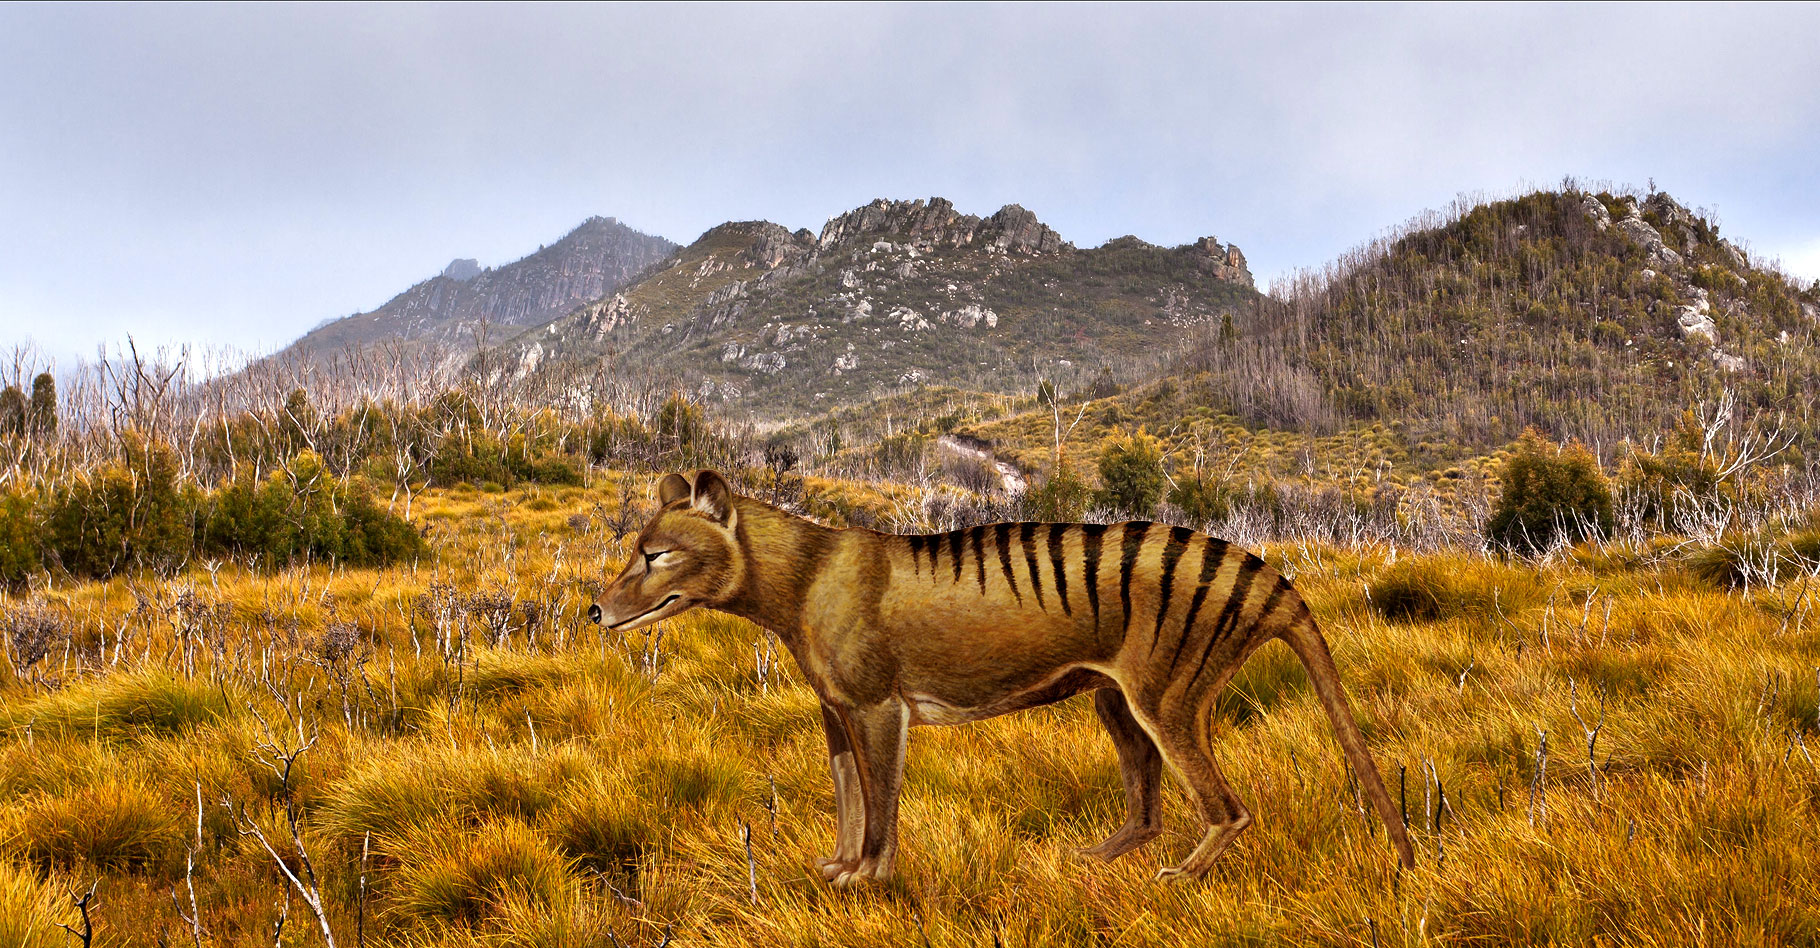 Le tigre de Tasmanie.&nbsp;© Bill Higham CC BY-NC 2.0 - FS domaine public